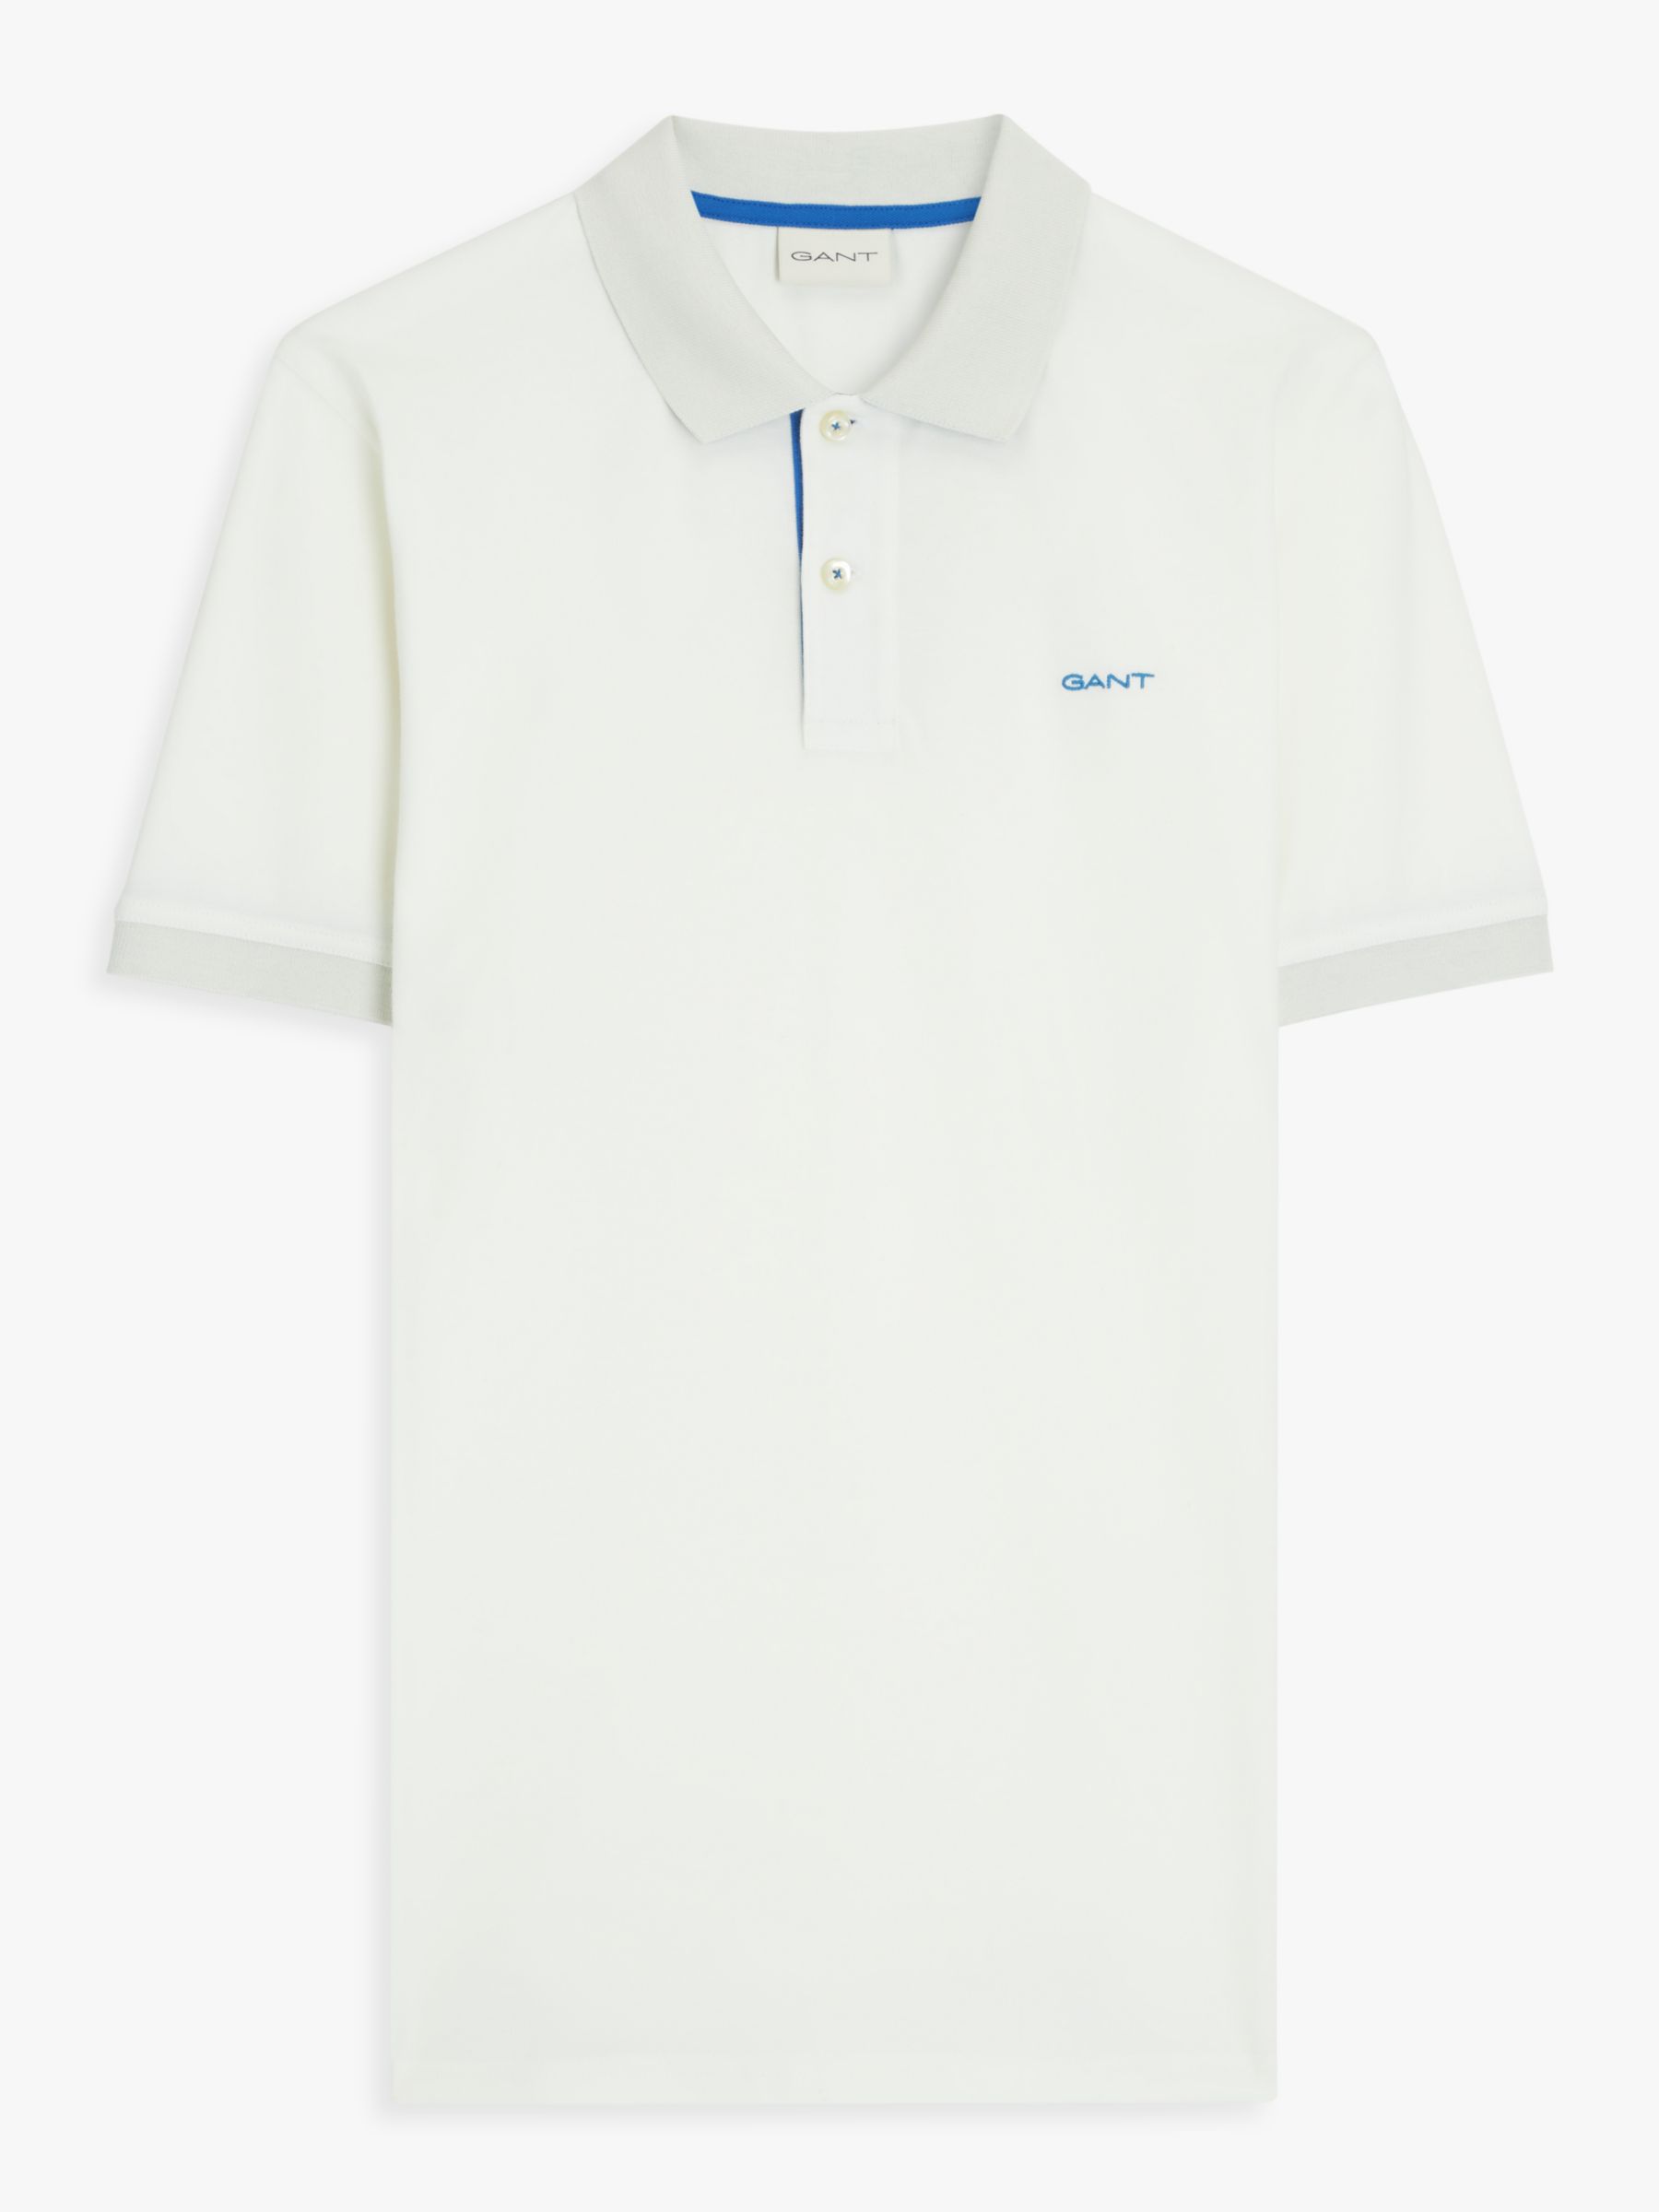 GANT Regular Contrast Pique Polo Shirt, White, M